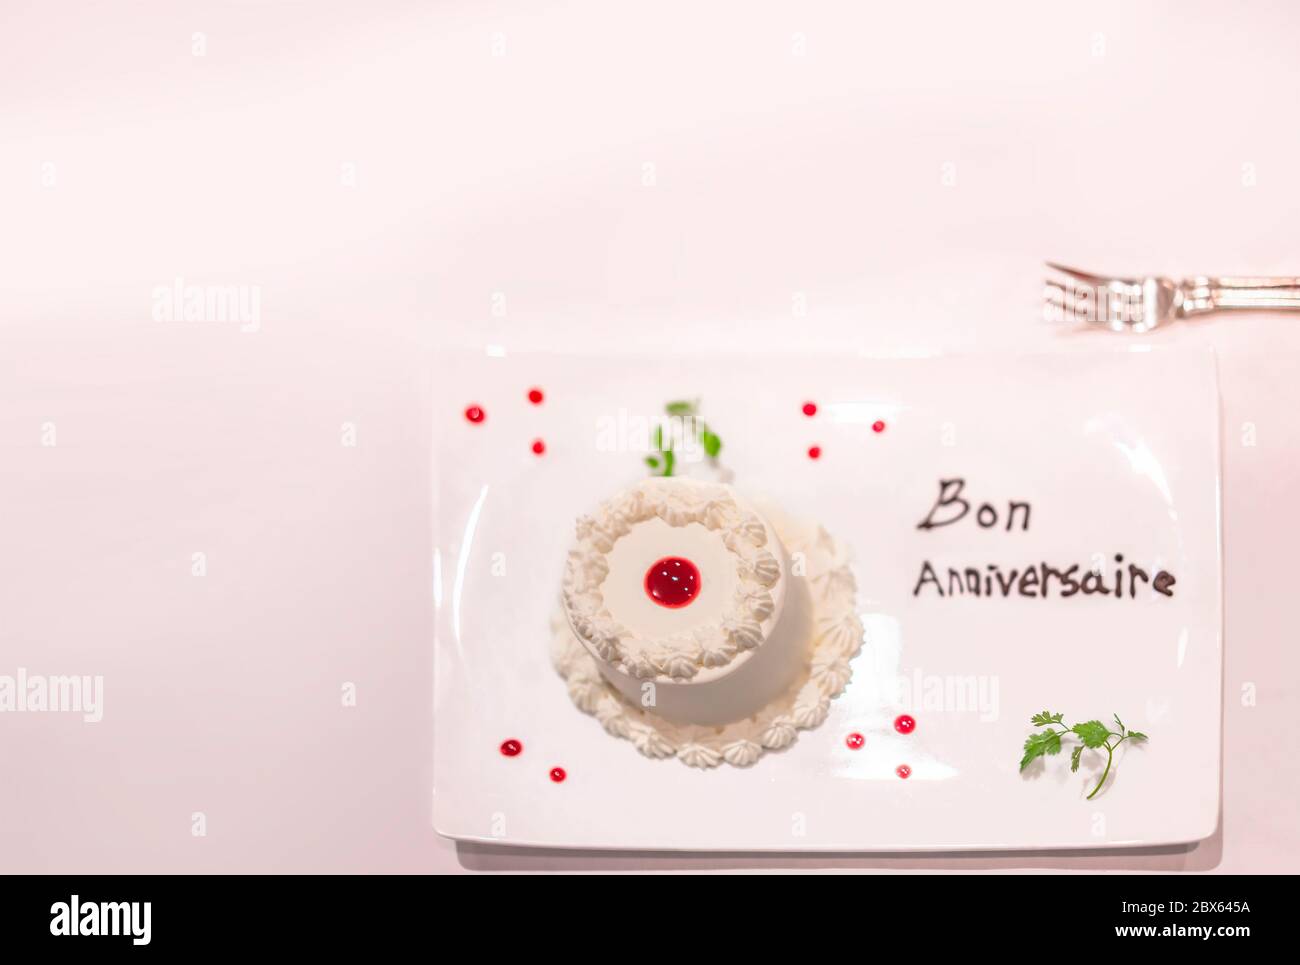 Kleiner weißer Kuchen auf einem Teller mit Erdbeersauce und Minzblättern  mit Happy Birthday oder Bon Anniversaire in französisch in chocol  Stockfotografie - Alamy